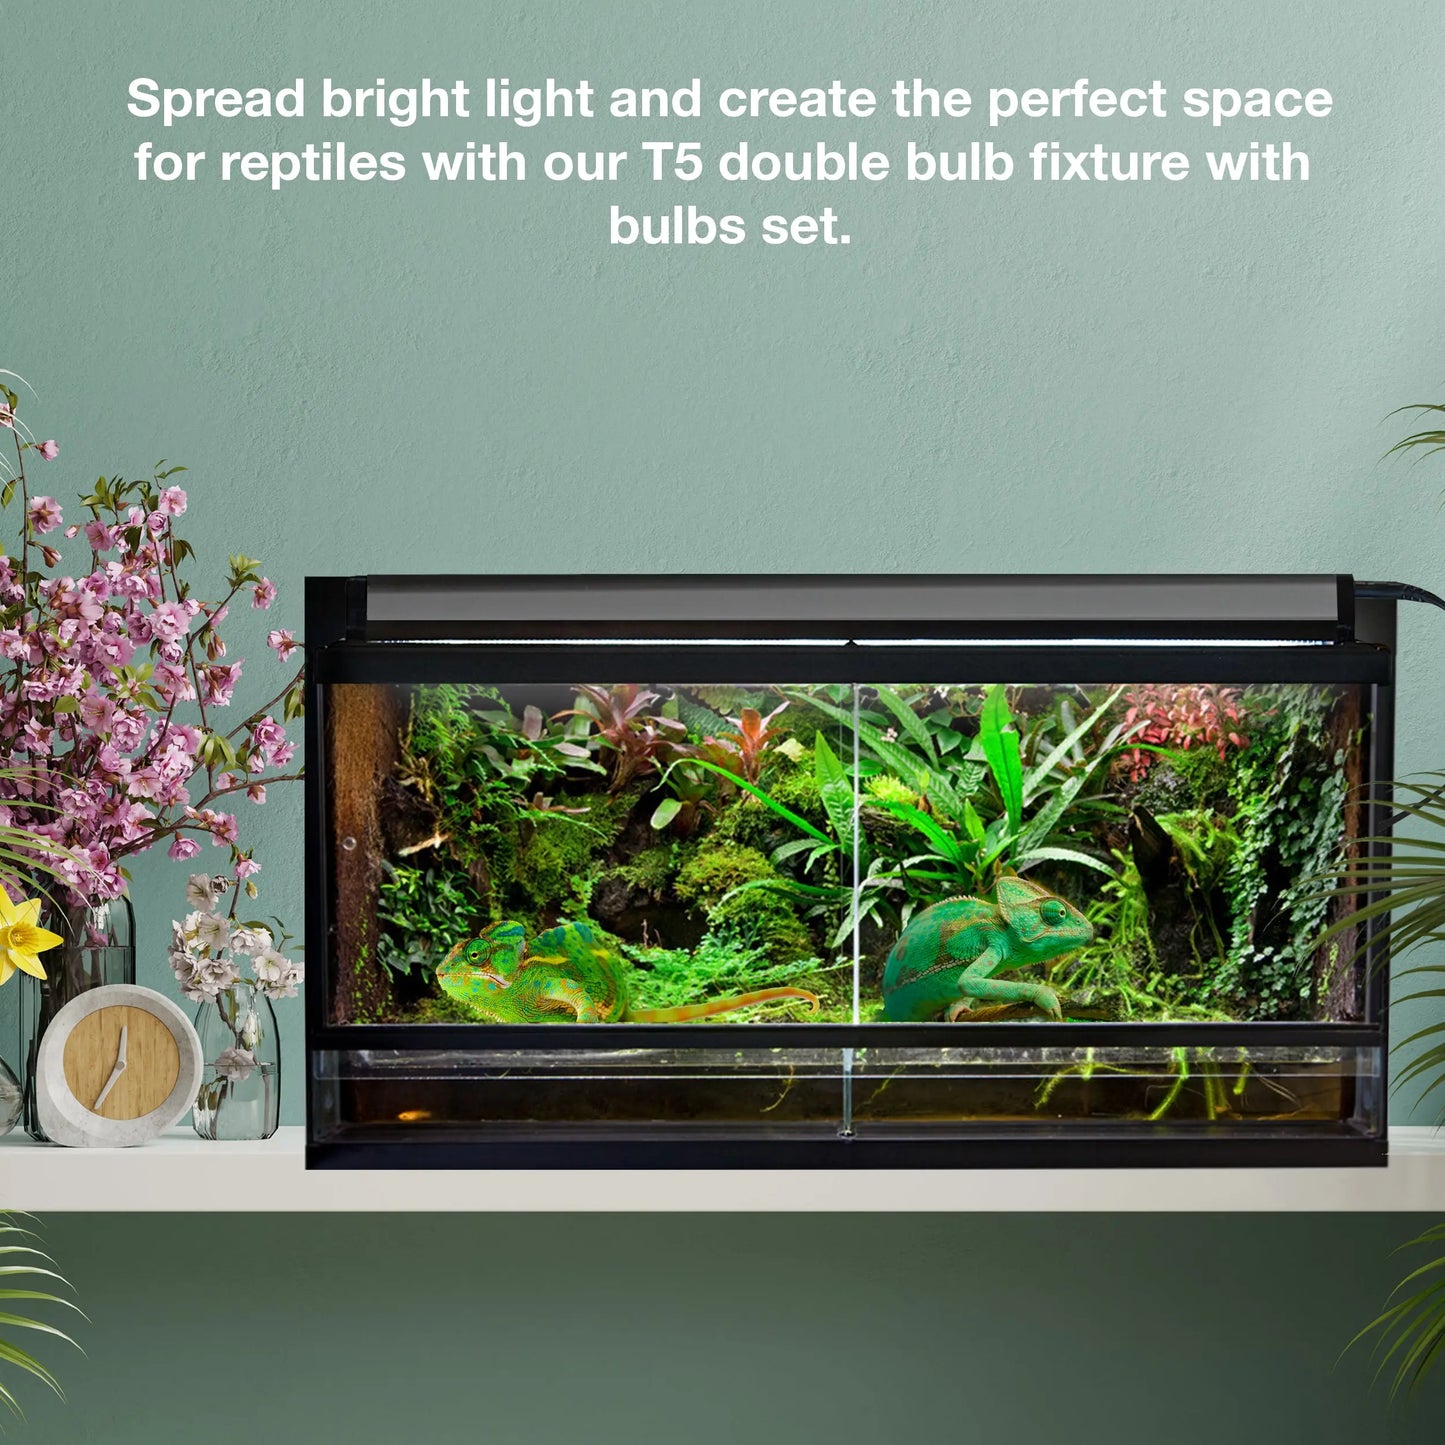 Talis-us Double Fixture with Arcadia Bulb and LED Bar HO T5 UVB Reptiles Aquarium Light Arboreal Terrarium Hood Talis Us